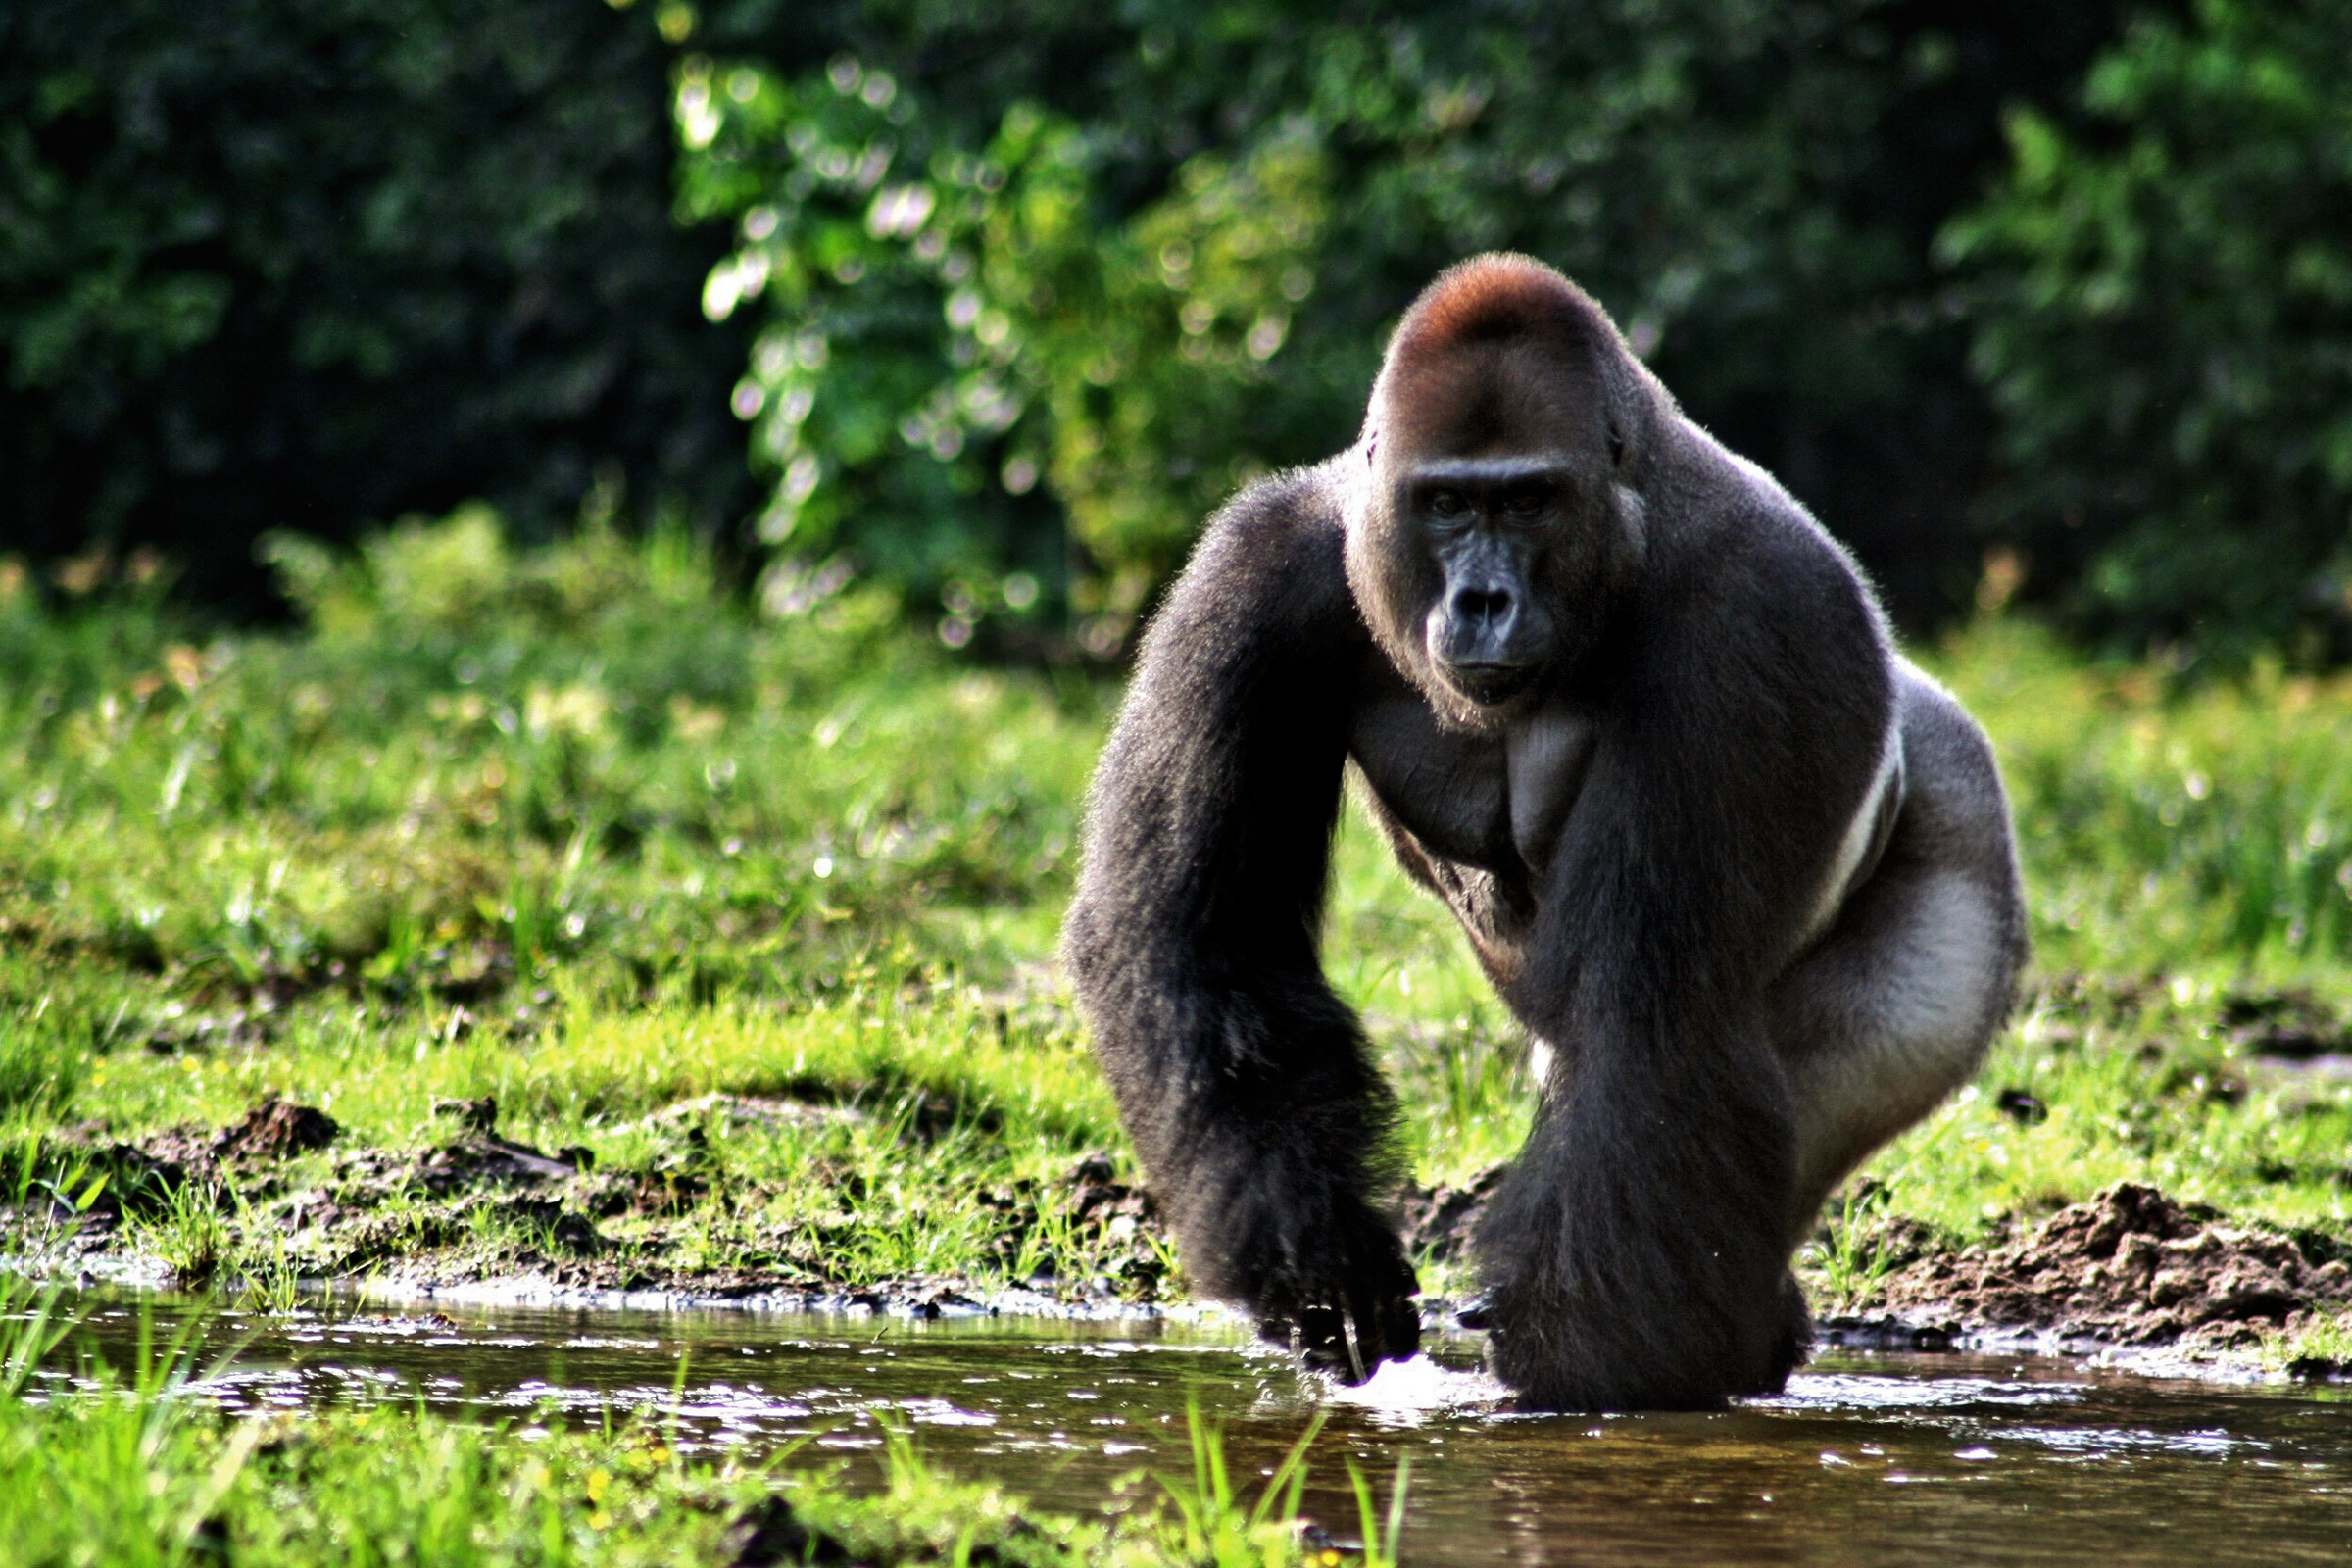 Uganda travels, HD gorilla wallpaper, Majestic creatures, 2400x1600 HD Desktop